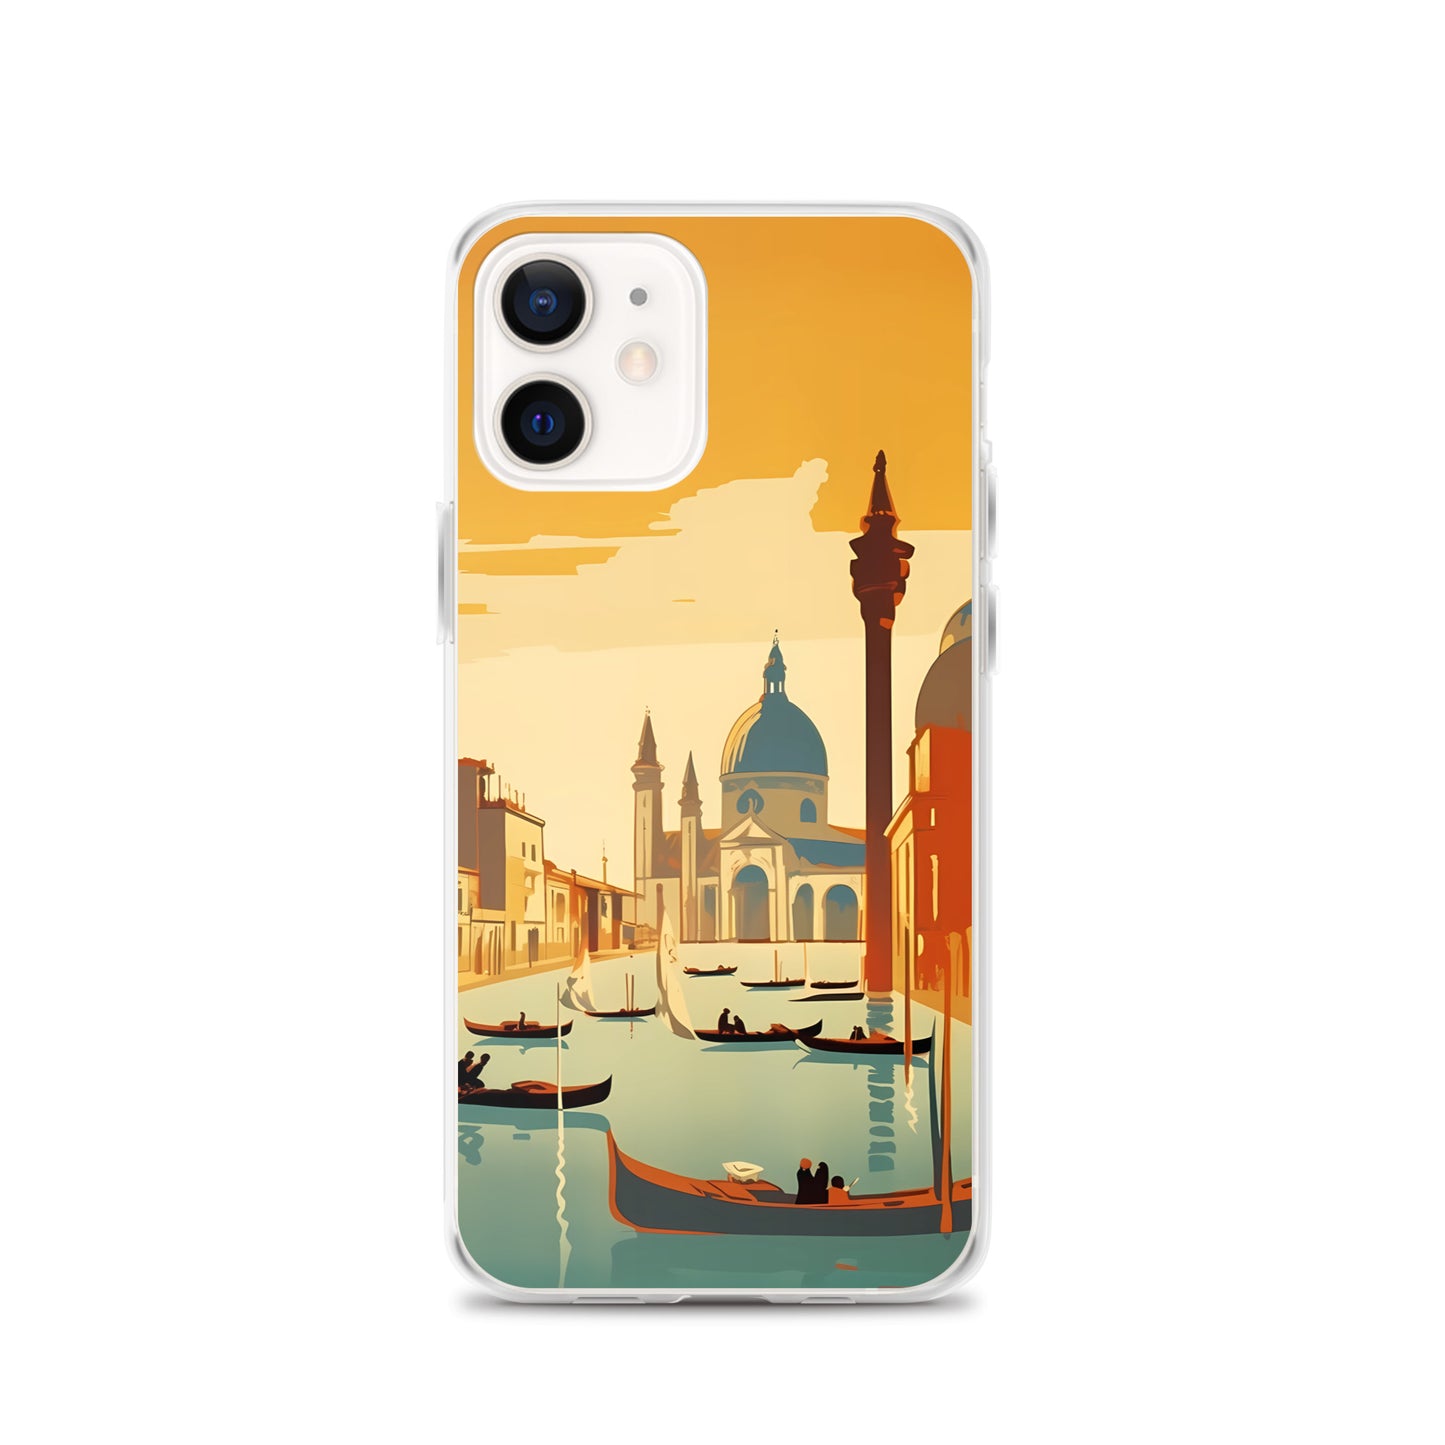 iPhone Case - Vintage Adverts - Venice